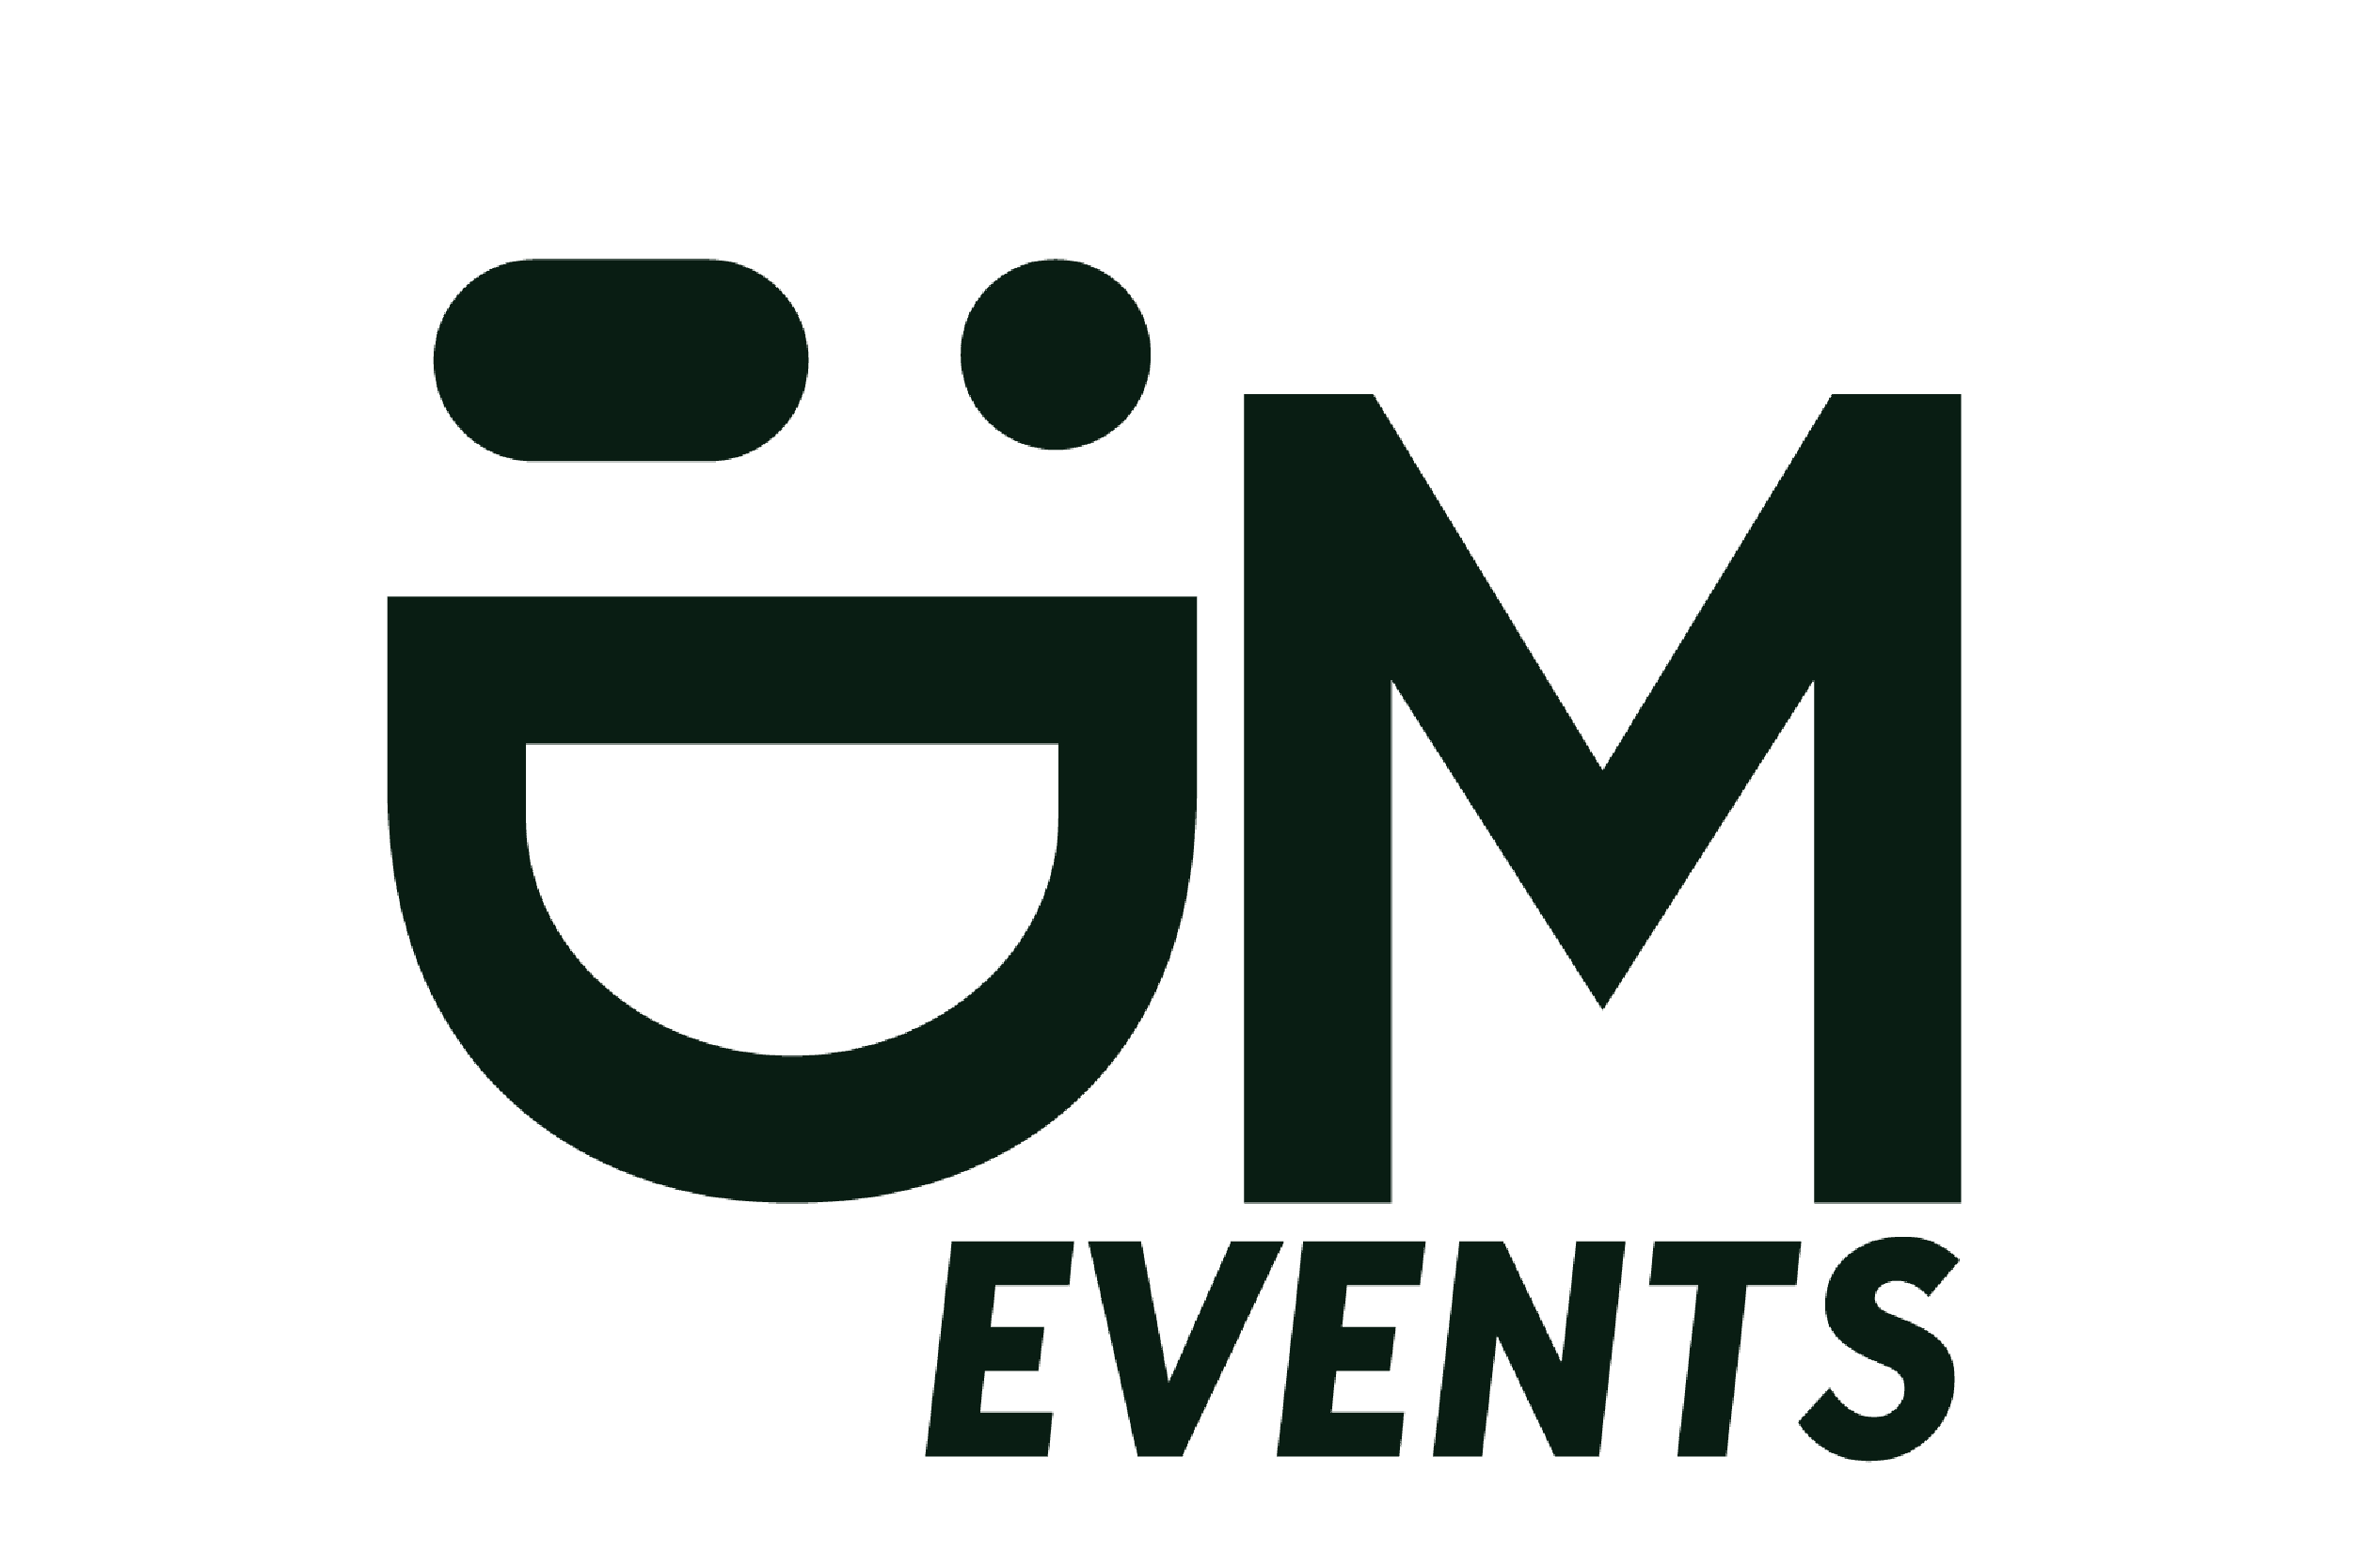 Het logo van em-events